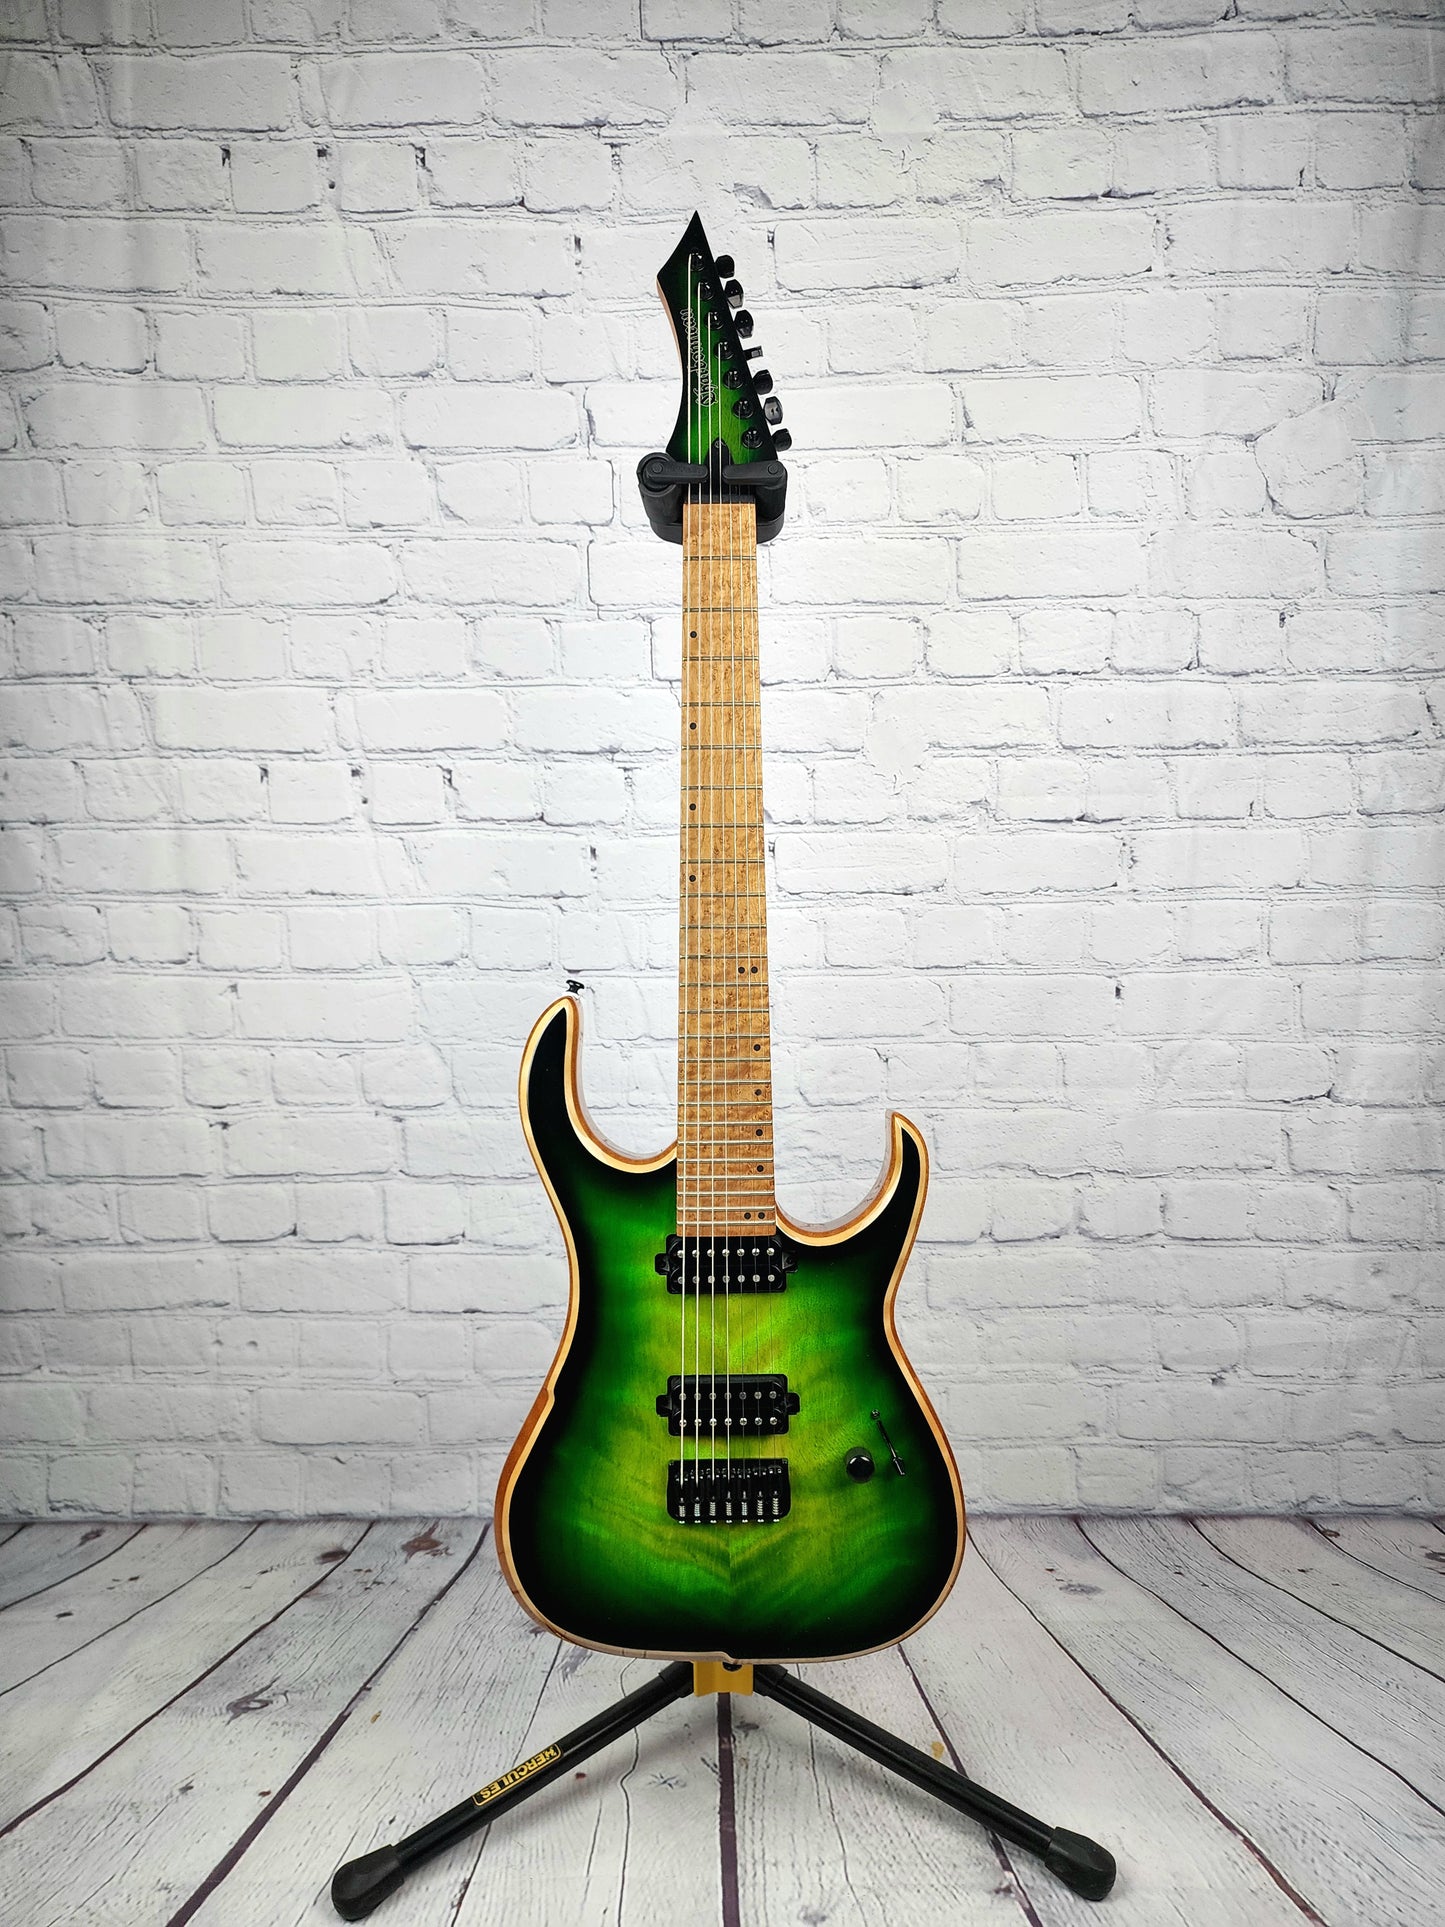 Charbonneau Guitars Scimtar 7S 7 String Green Burst Electric Guitar Bare Knuckle Hipshot